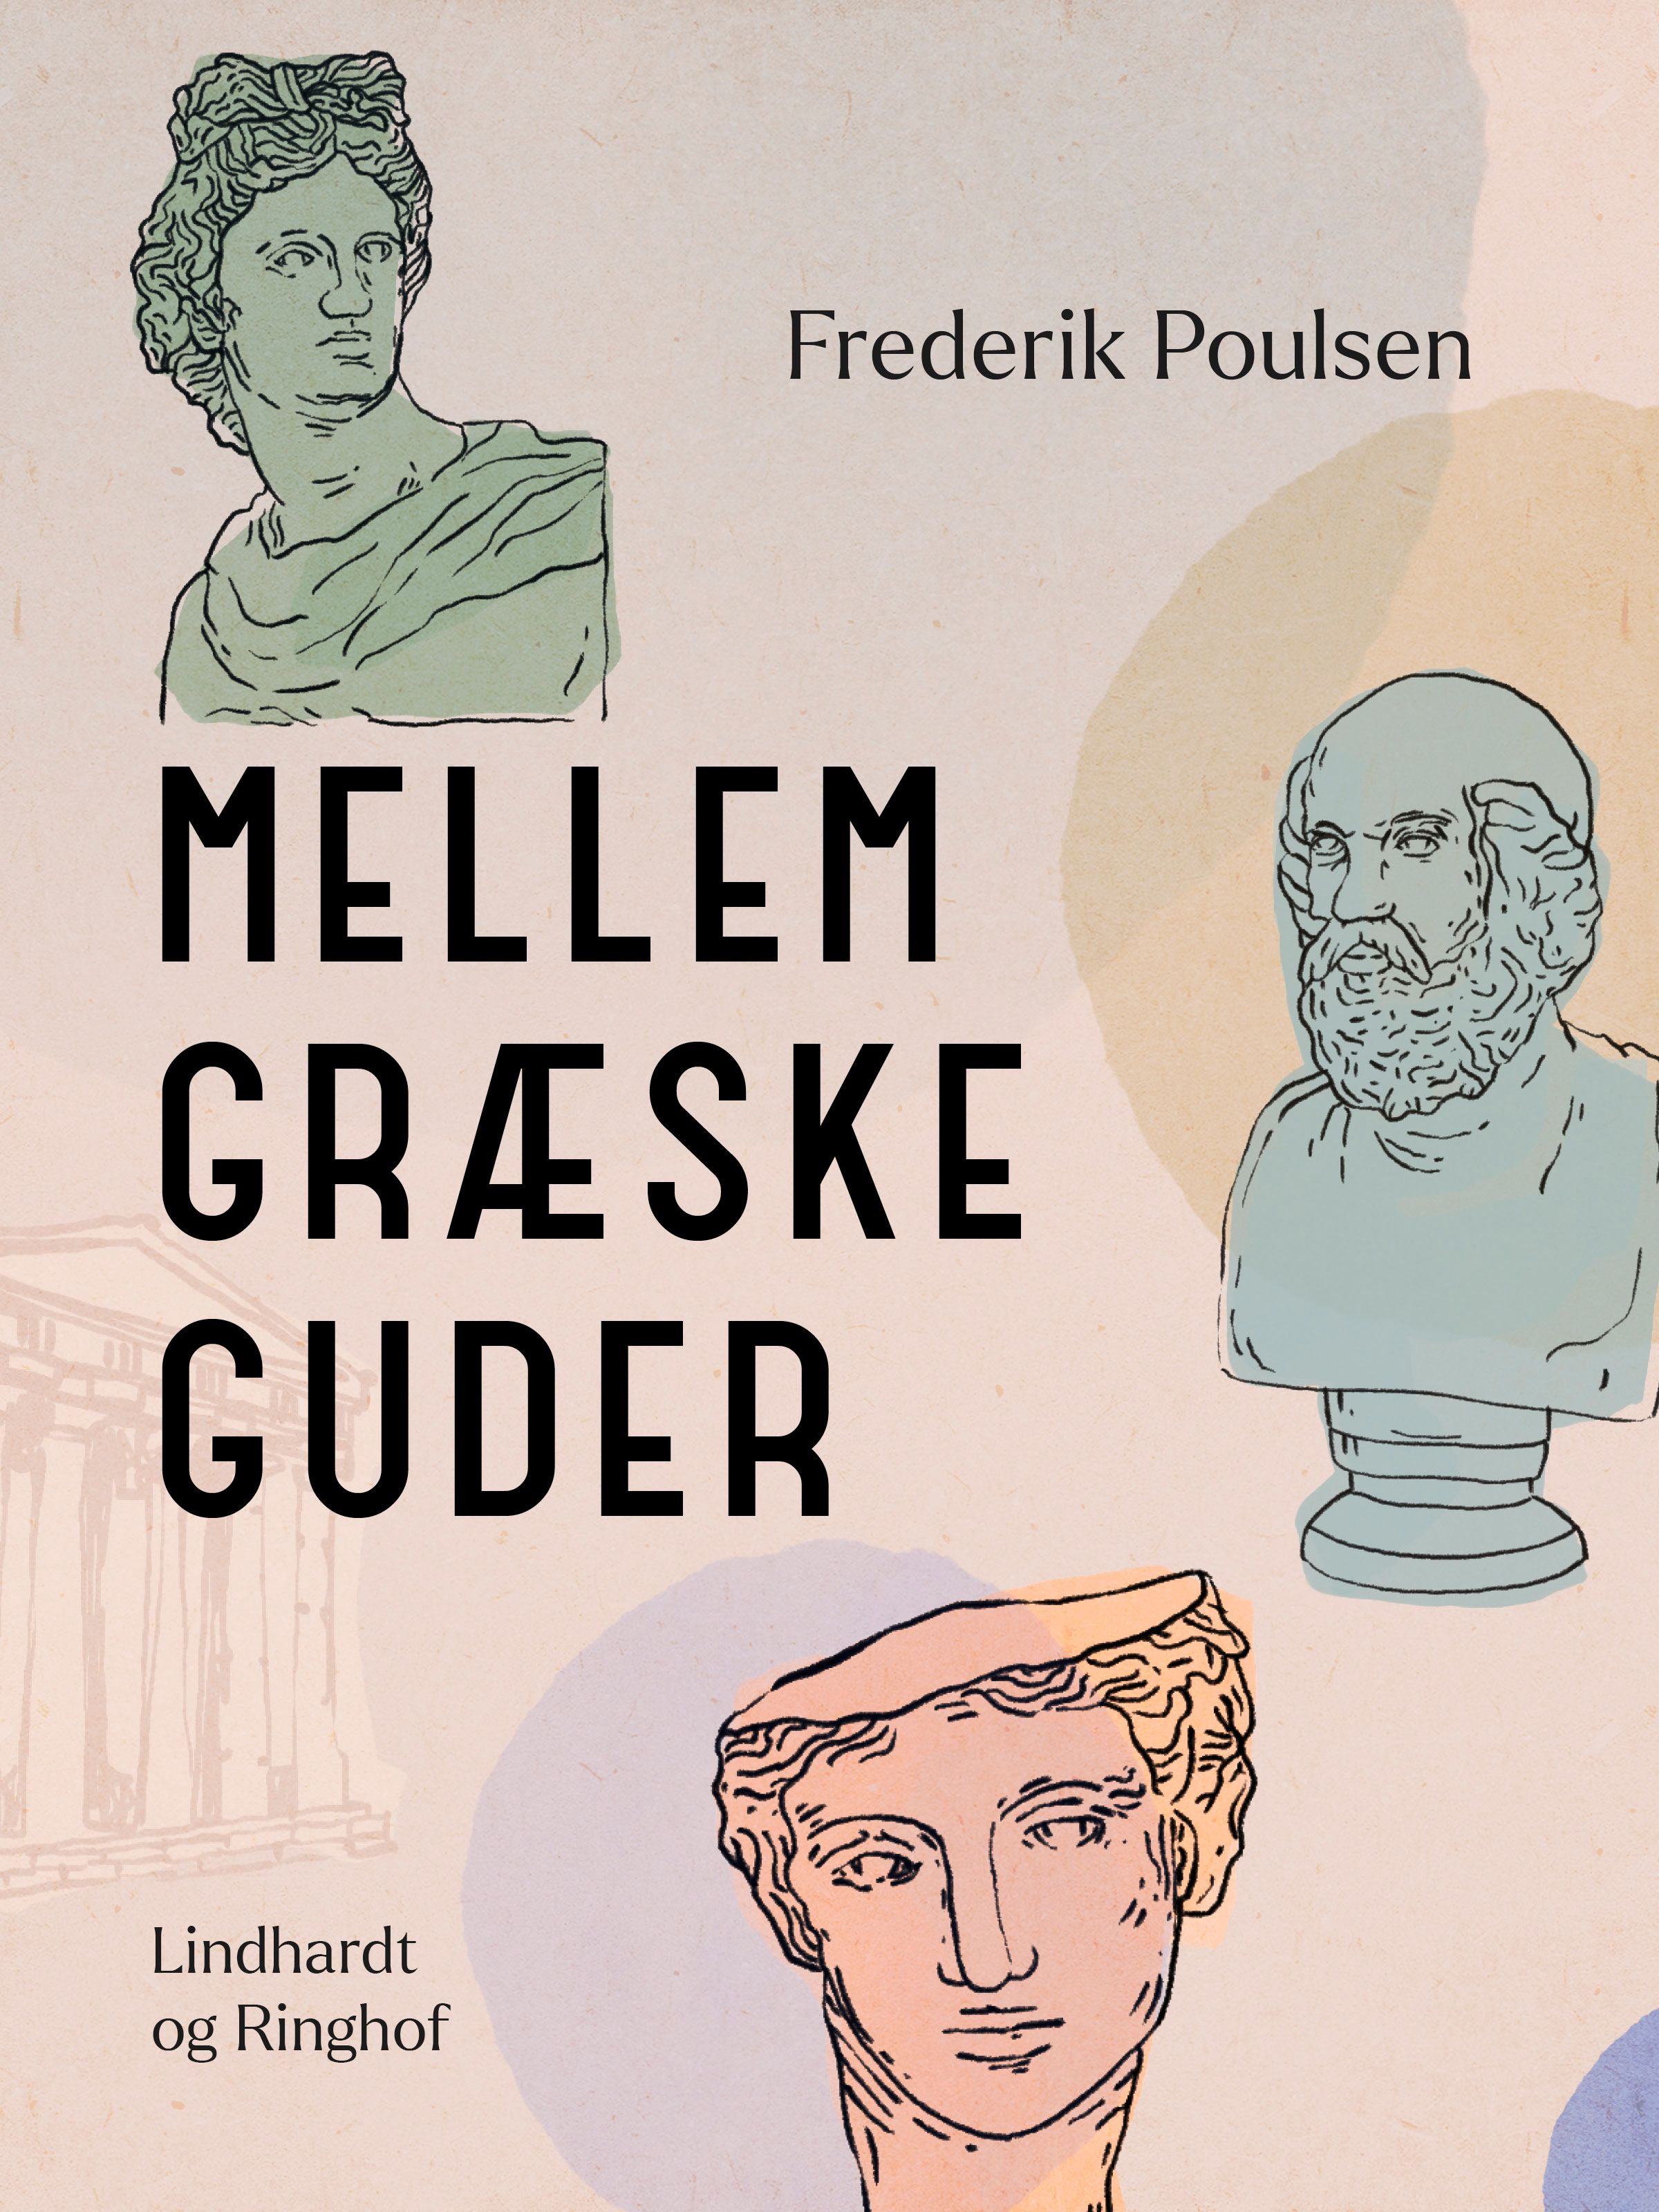 Mellem græske guder, e-bok av Frederik Poulsen